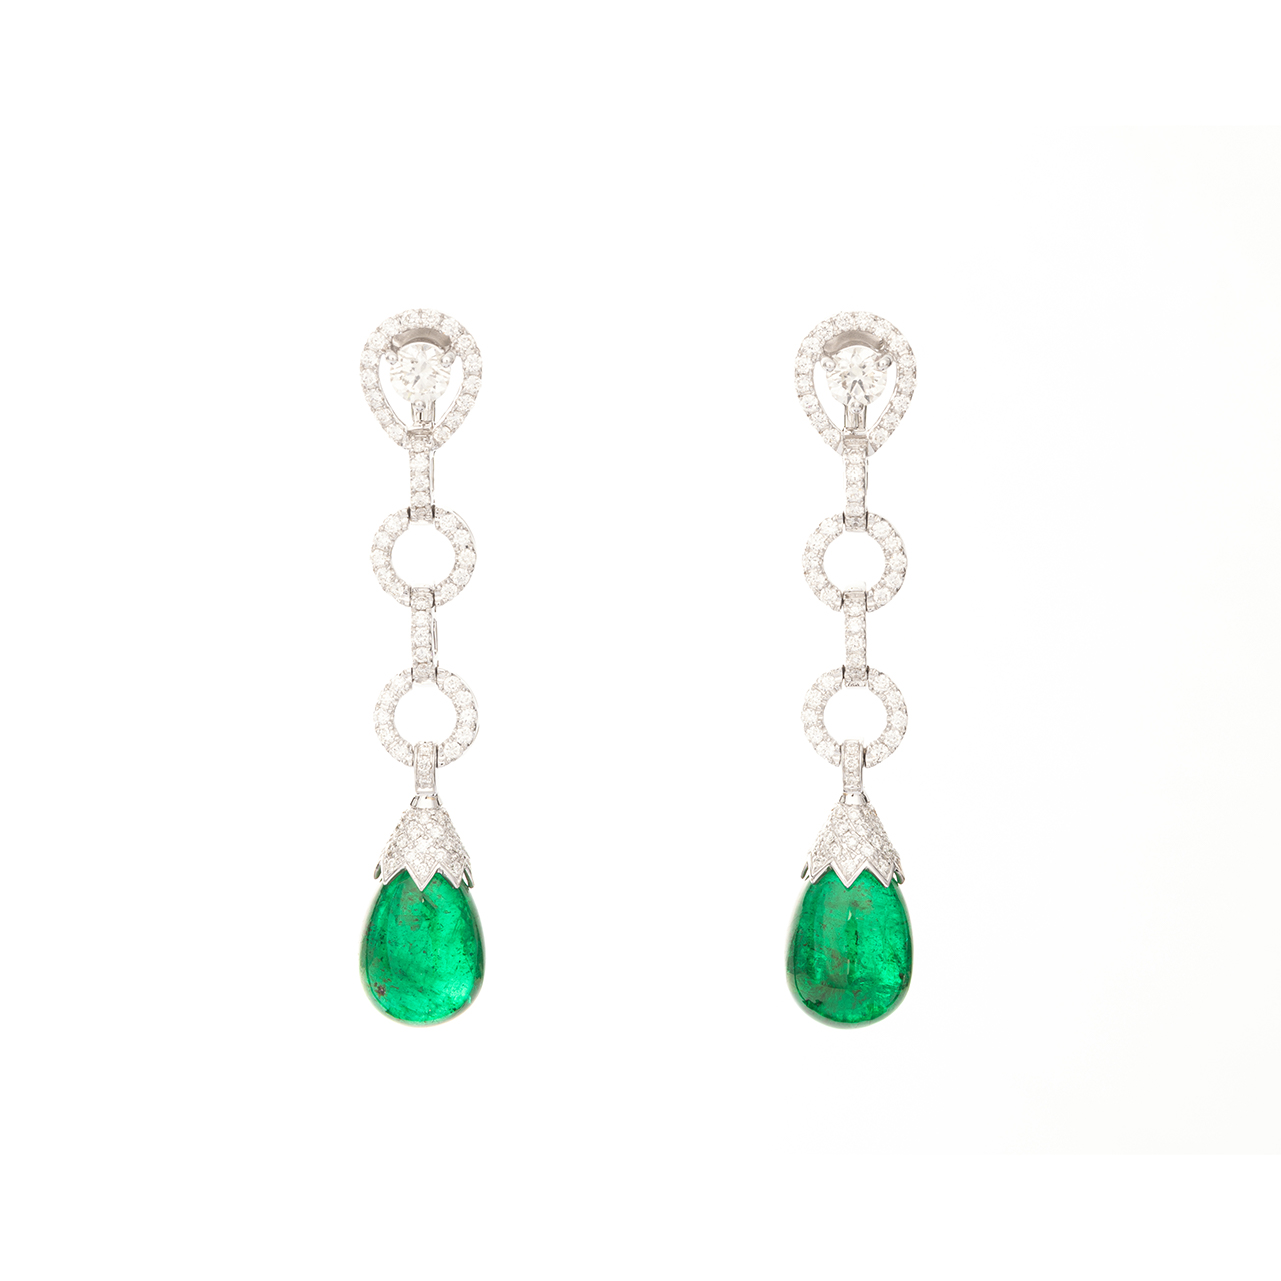 Alexander Laut, Emerald forest. Ohrhänger mit Smaragdtropfen und Brillanten